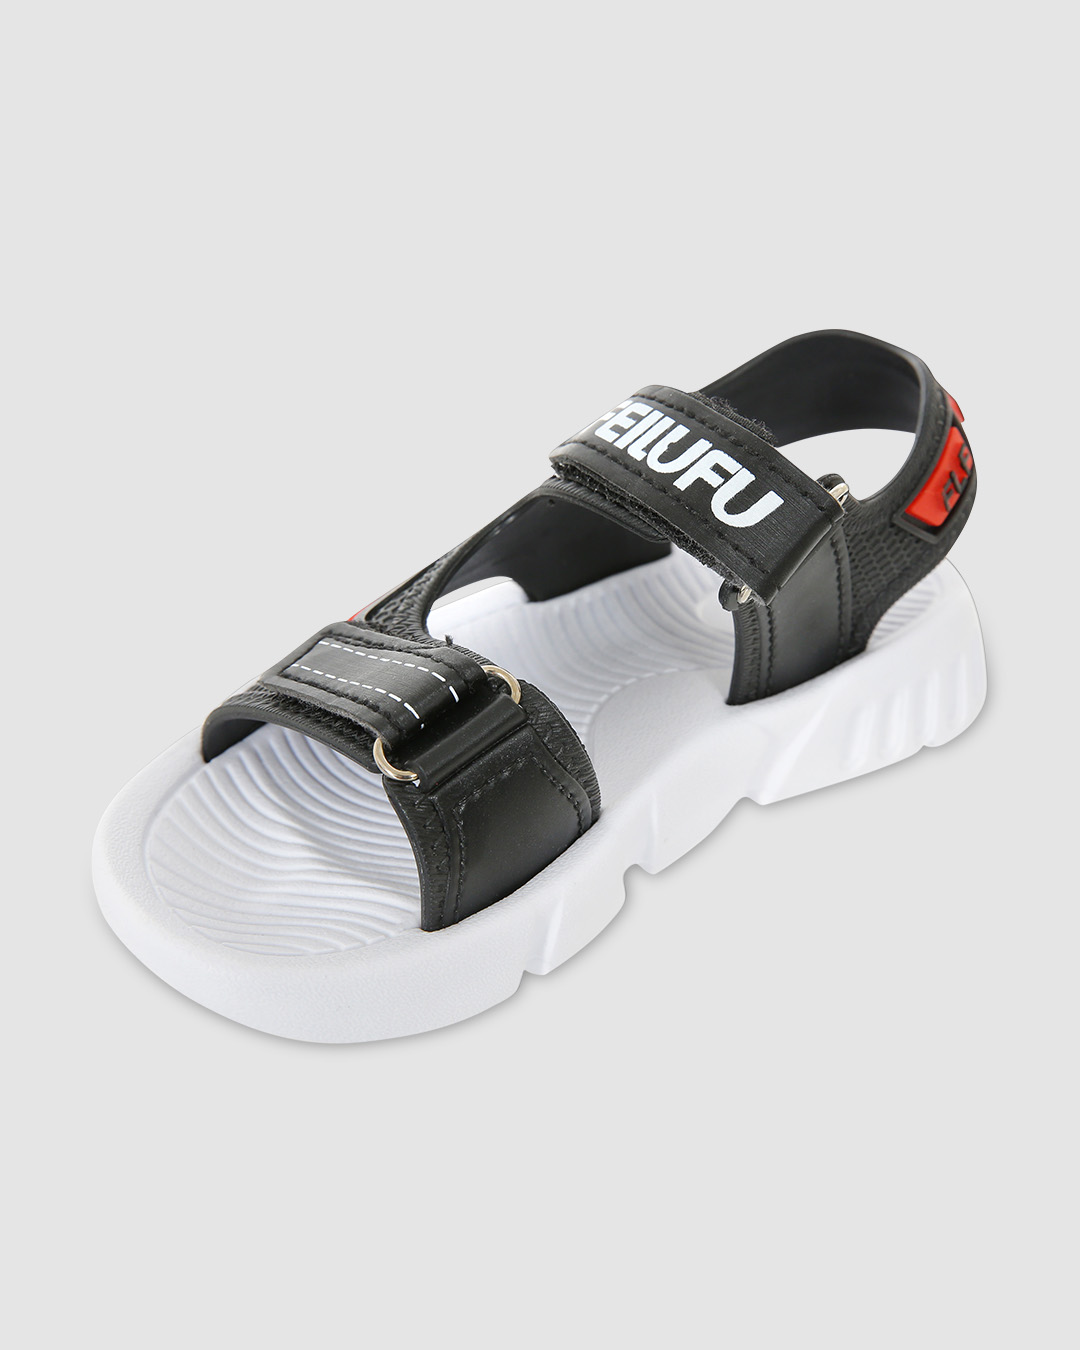 Giày sandal Á Châu Avakids AC7 màu xám - đen